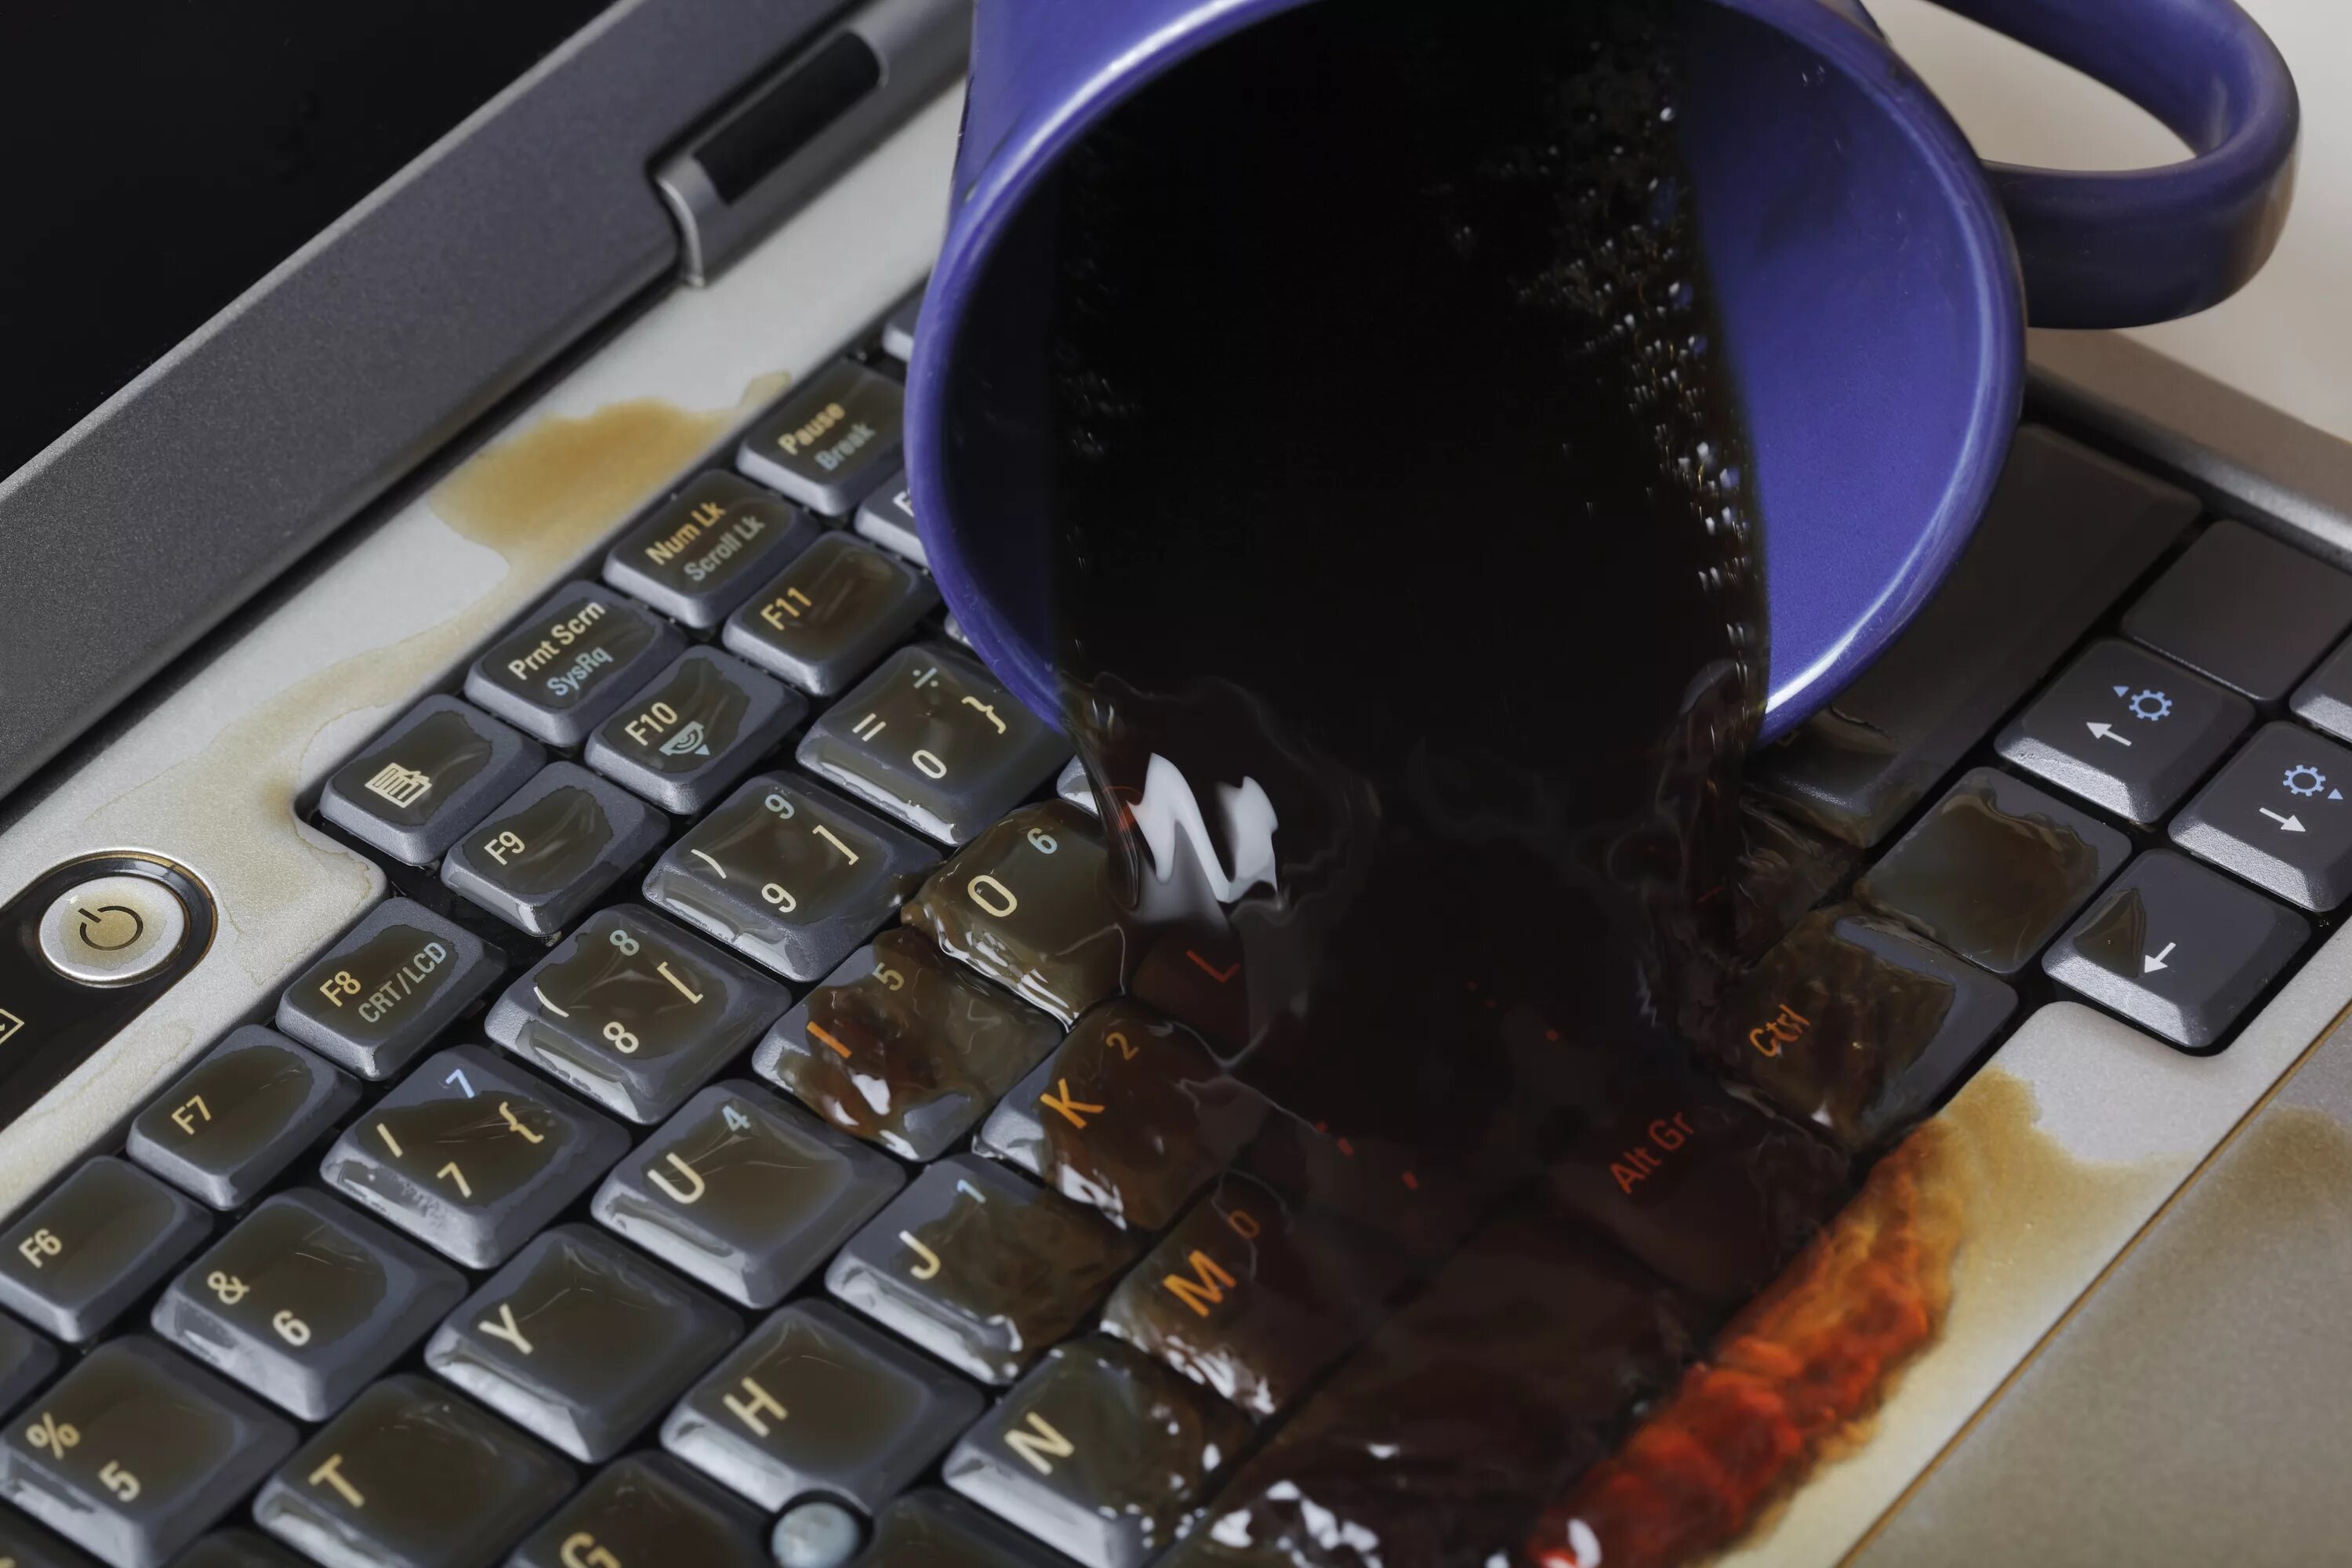 Откат ноутбука. Пролитый кофе на клавиатуру. Пролили воду на клавиатуру ноутбука. Пролил чай на клавиатуру. Кофе на клавиатуру ноутбука.